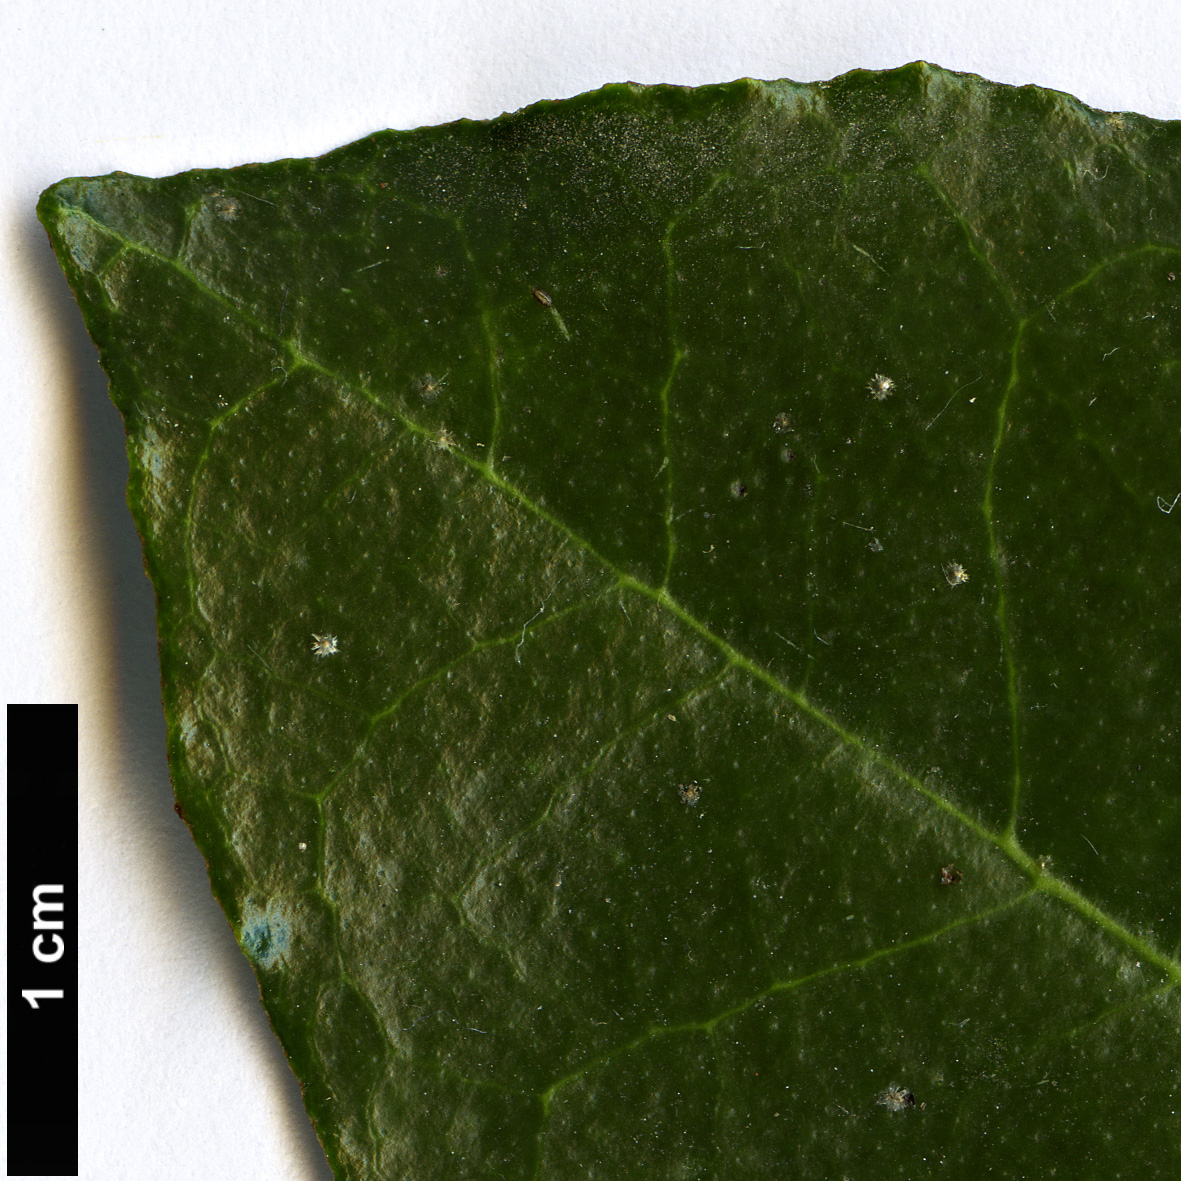 High resolution image: Family: Elaeagnaceae - Genus: Elaeagnus - Taxon: pungens